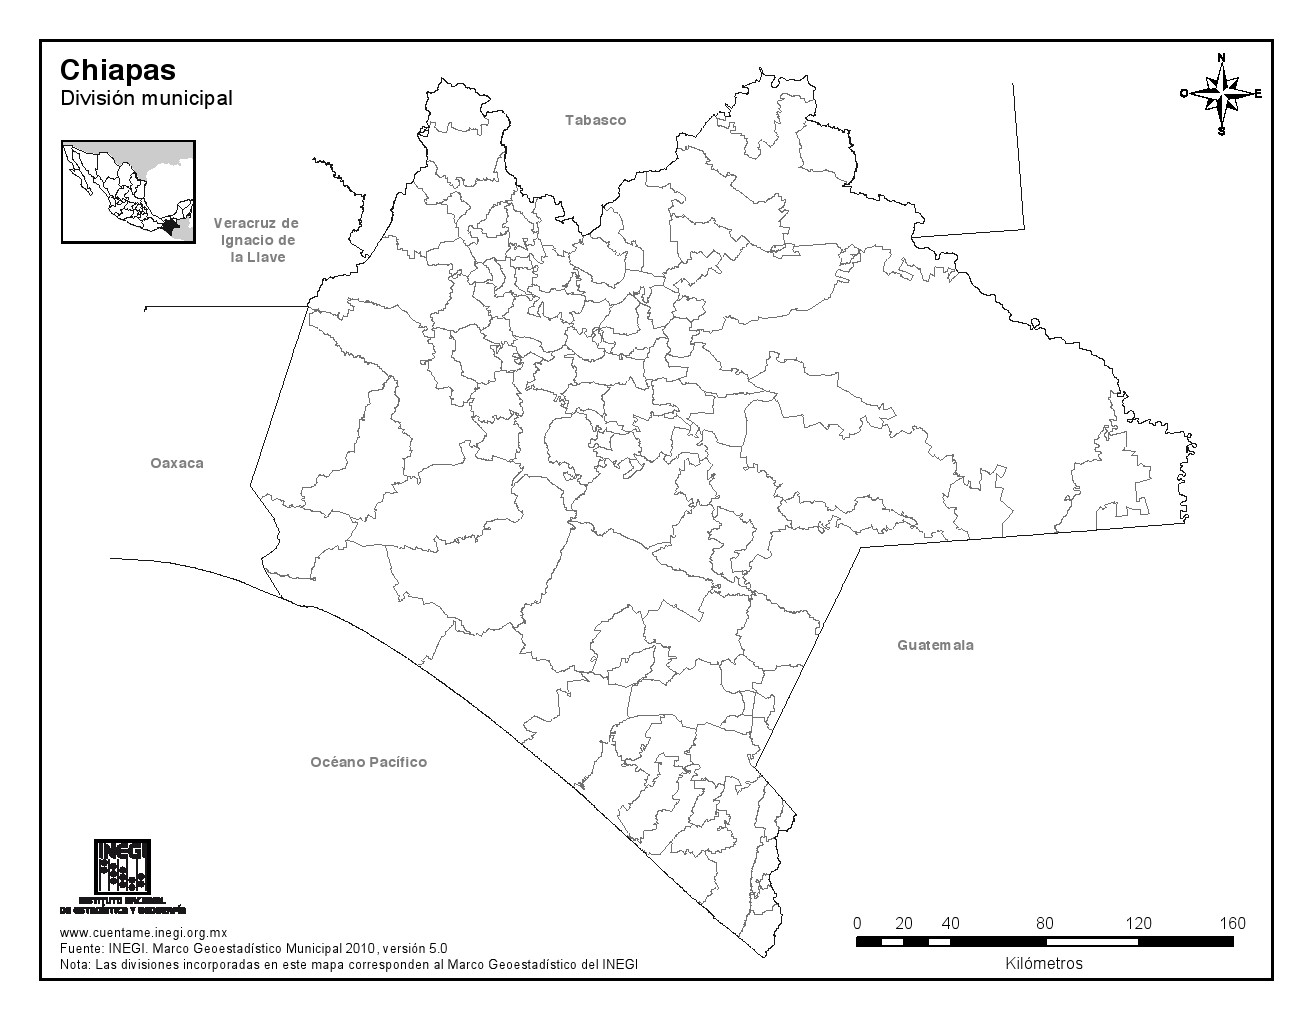 Mapa mudo de municipios de Chiapas. INEGI de México